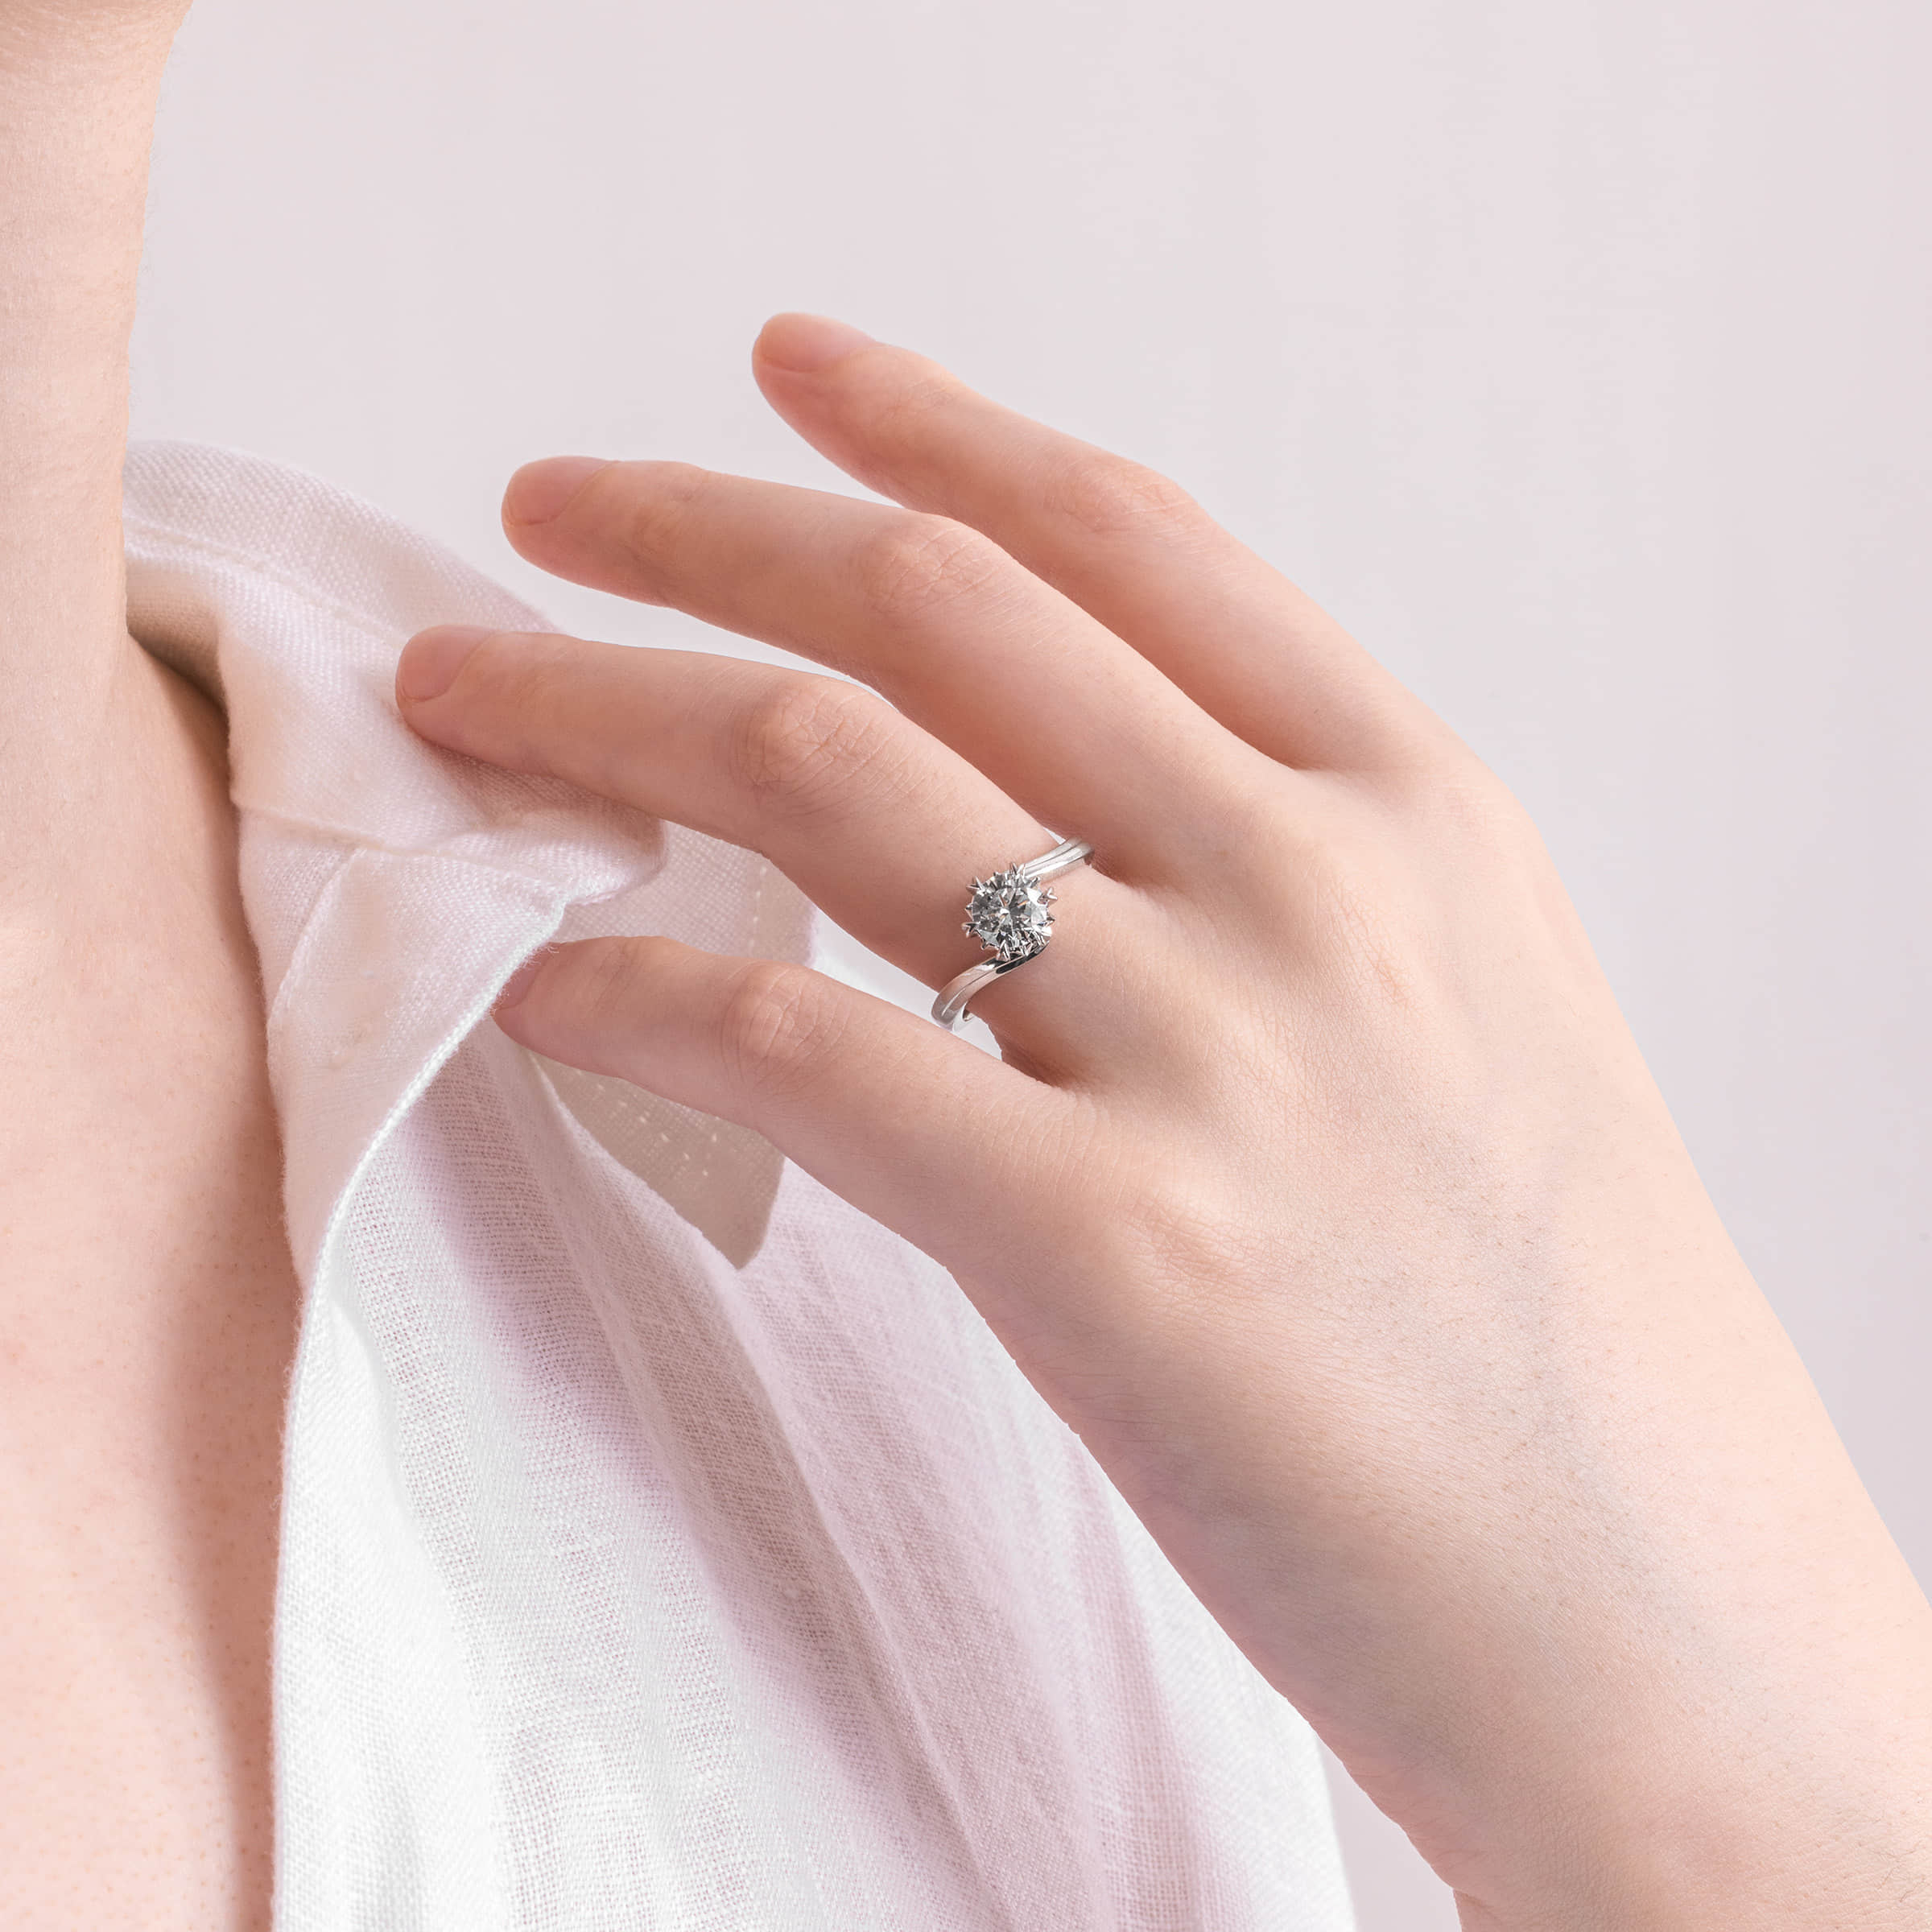 Darry Ring flower diamond promise ring on finger